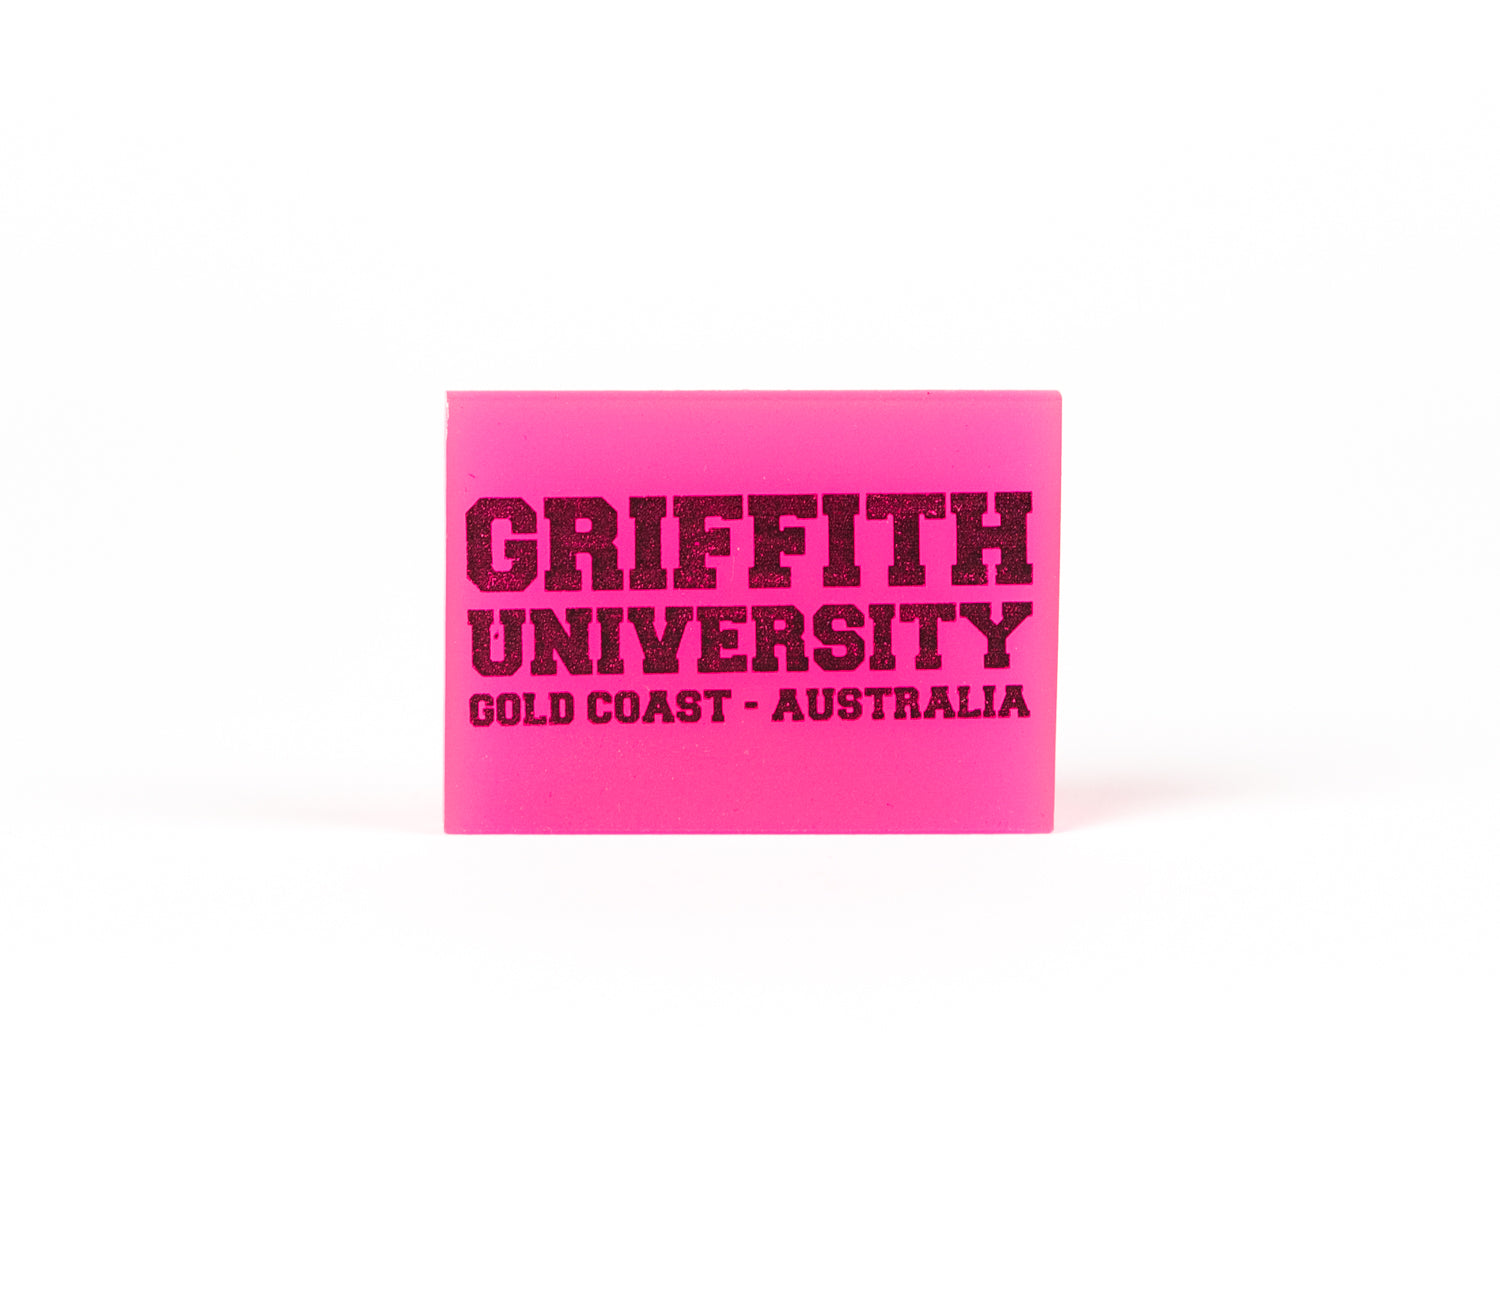 Griffith fluro eraser